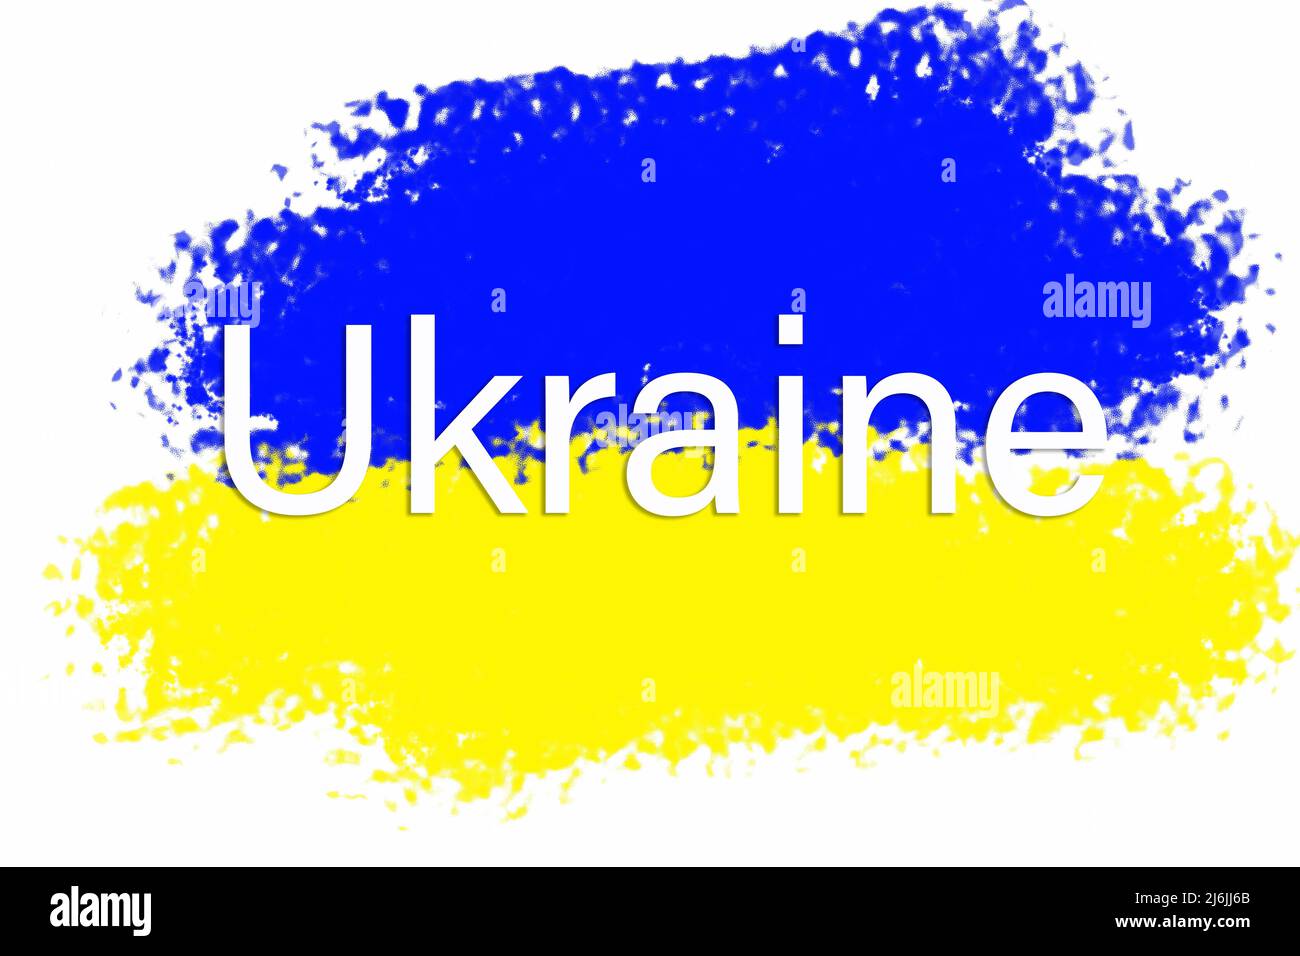 Bandiera dell'Ucraina raffigurante un cielo blu tranquillo con nuvole bianche e un campo seminato. L'aggressione militare della Russia contro l'Ucraina. Guerra, nessuna guerra in Ucraina Foto Stock